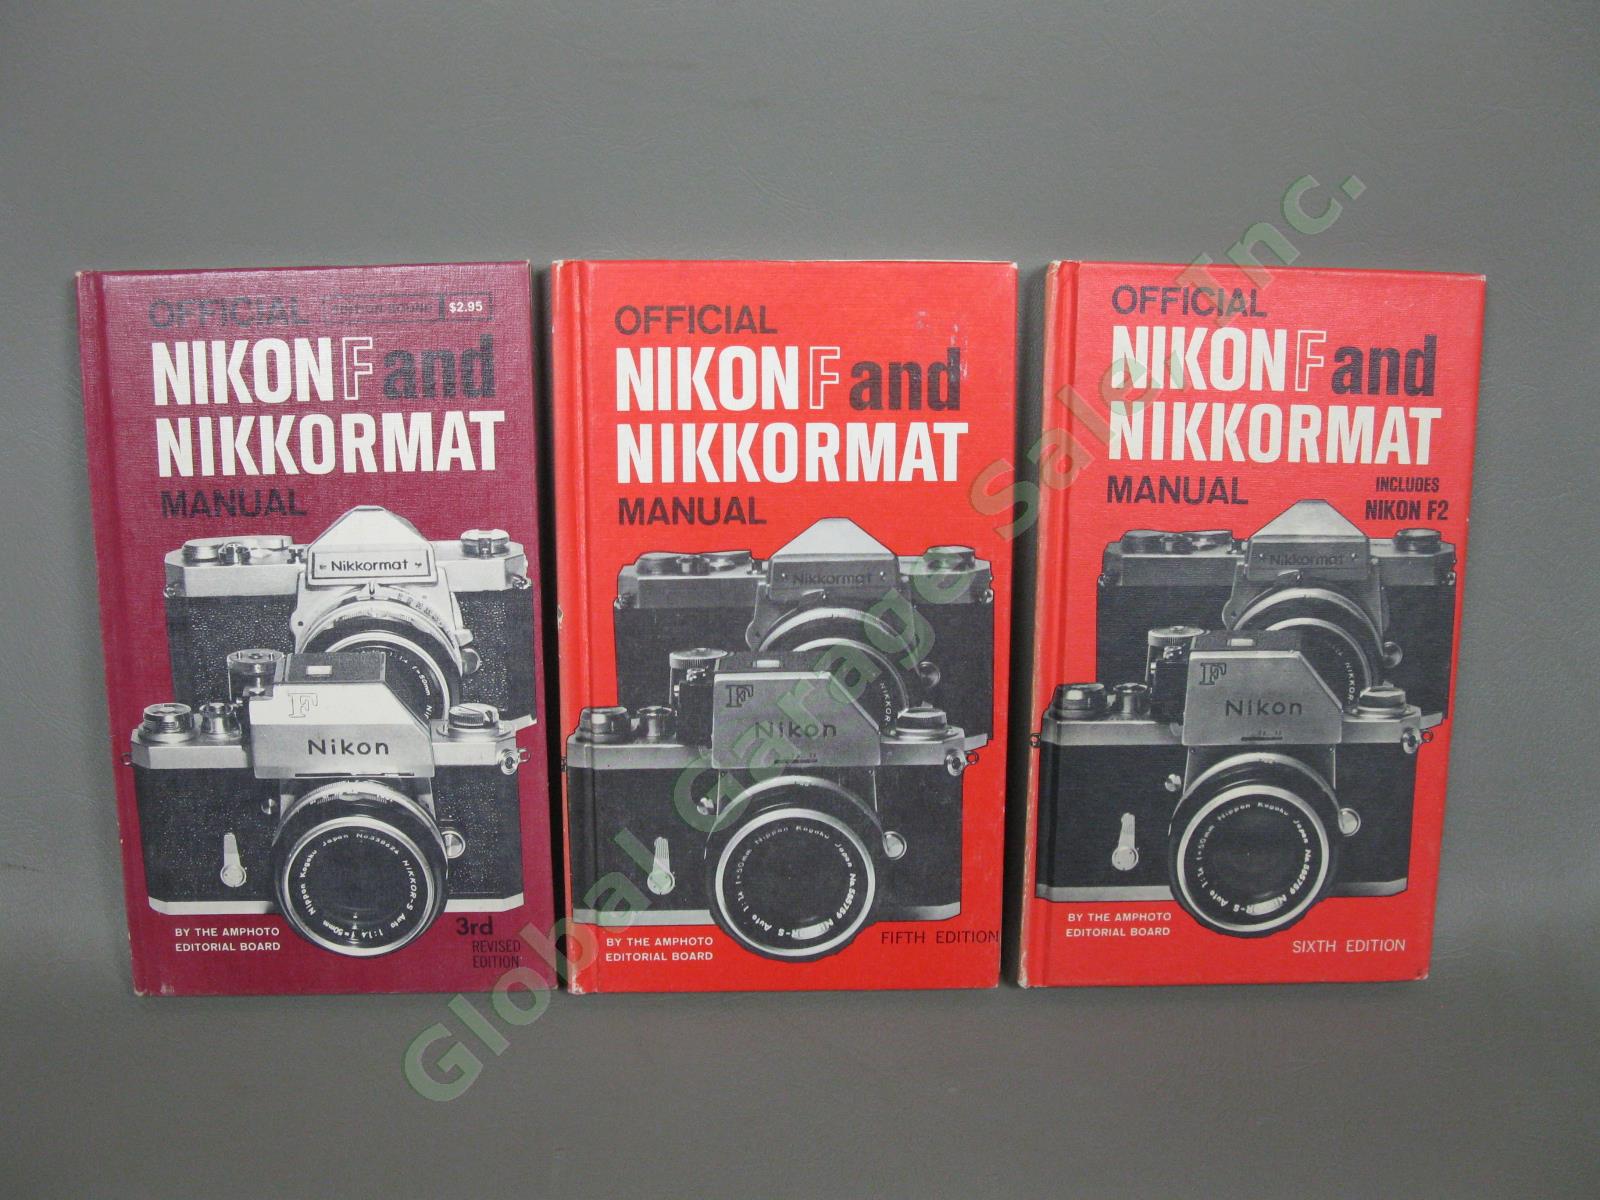 VTG Nikon Film Camera Books Manuals & Rangefinder Illustrated History SIGNED NR 8